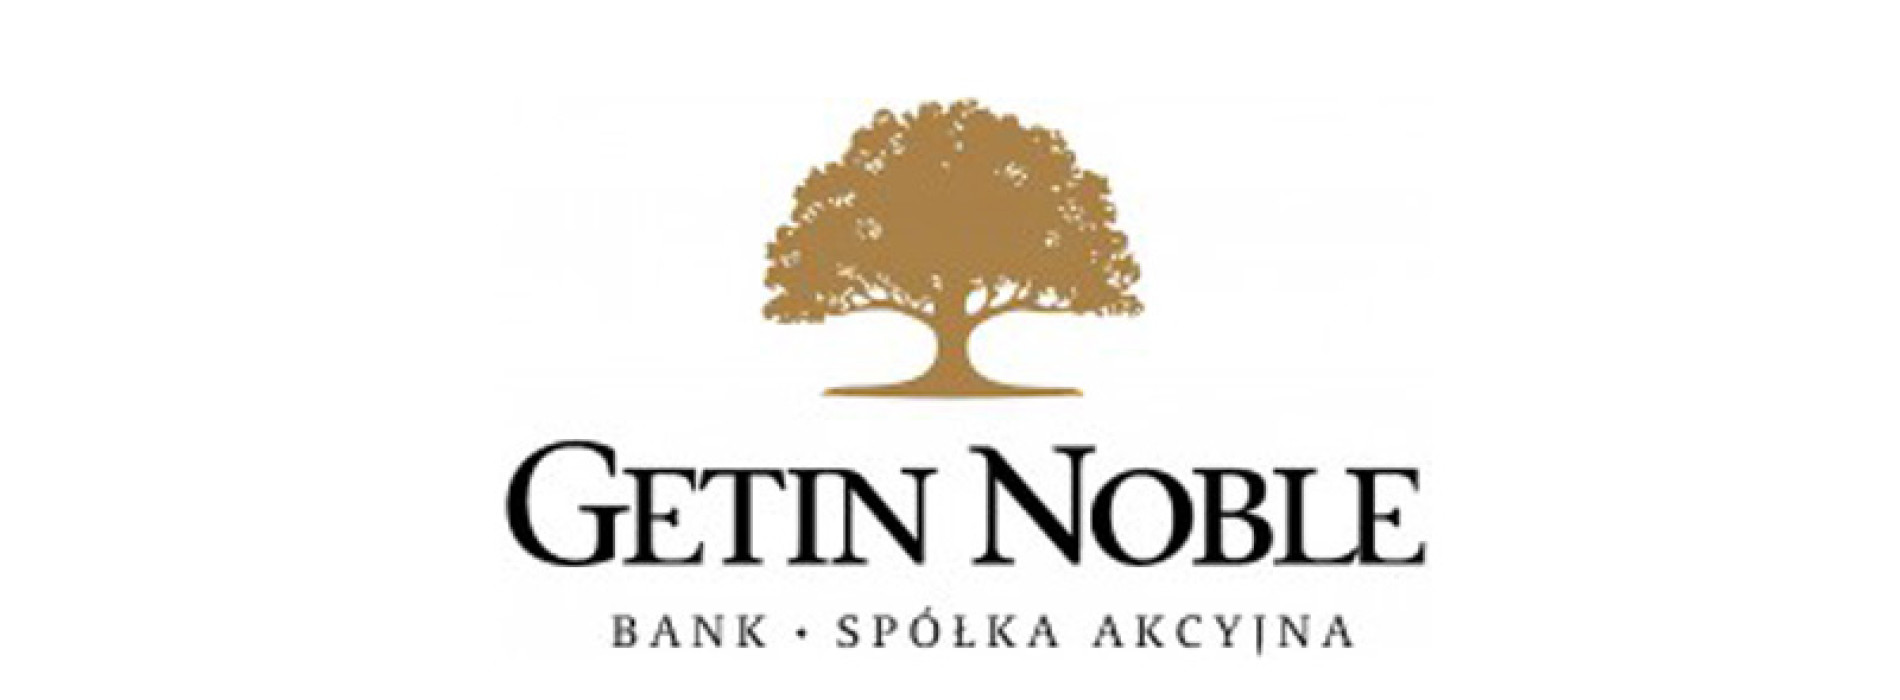 Getin Noble Bank wspiera szkoły podstawowe na Dolnym Śląsku